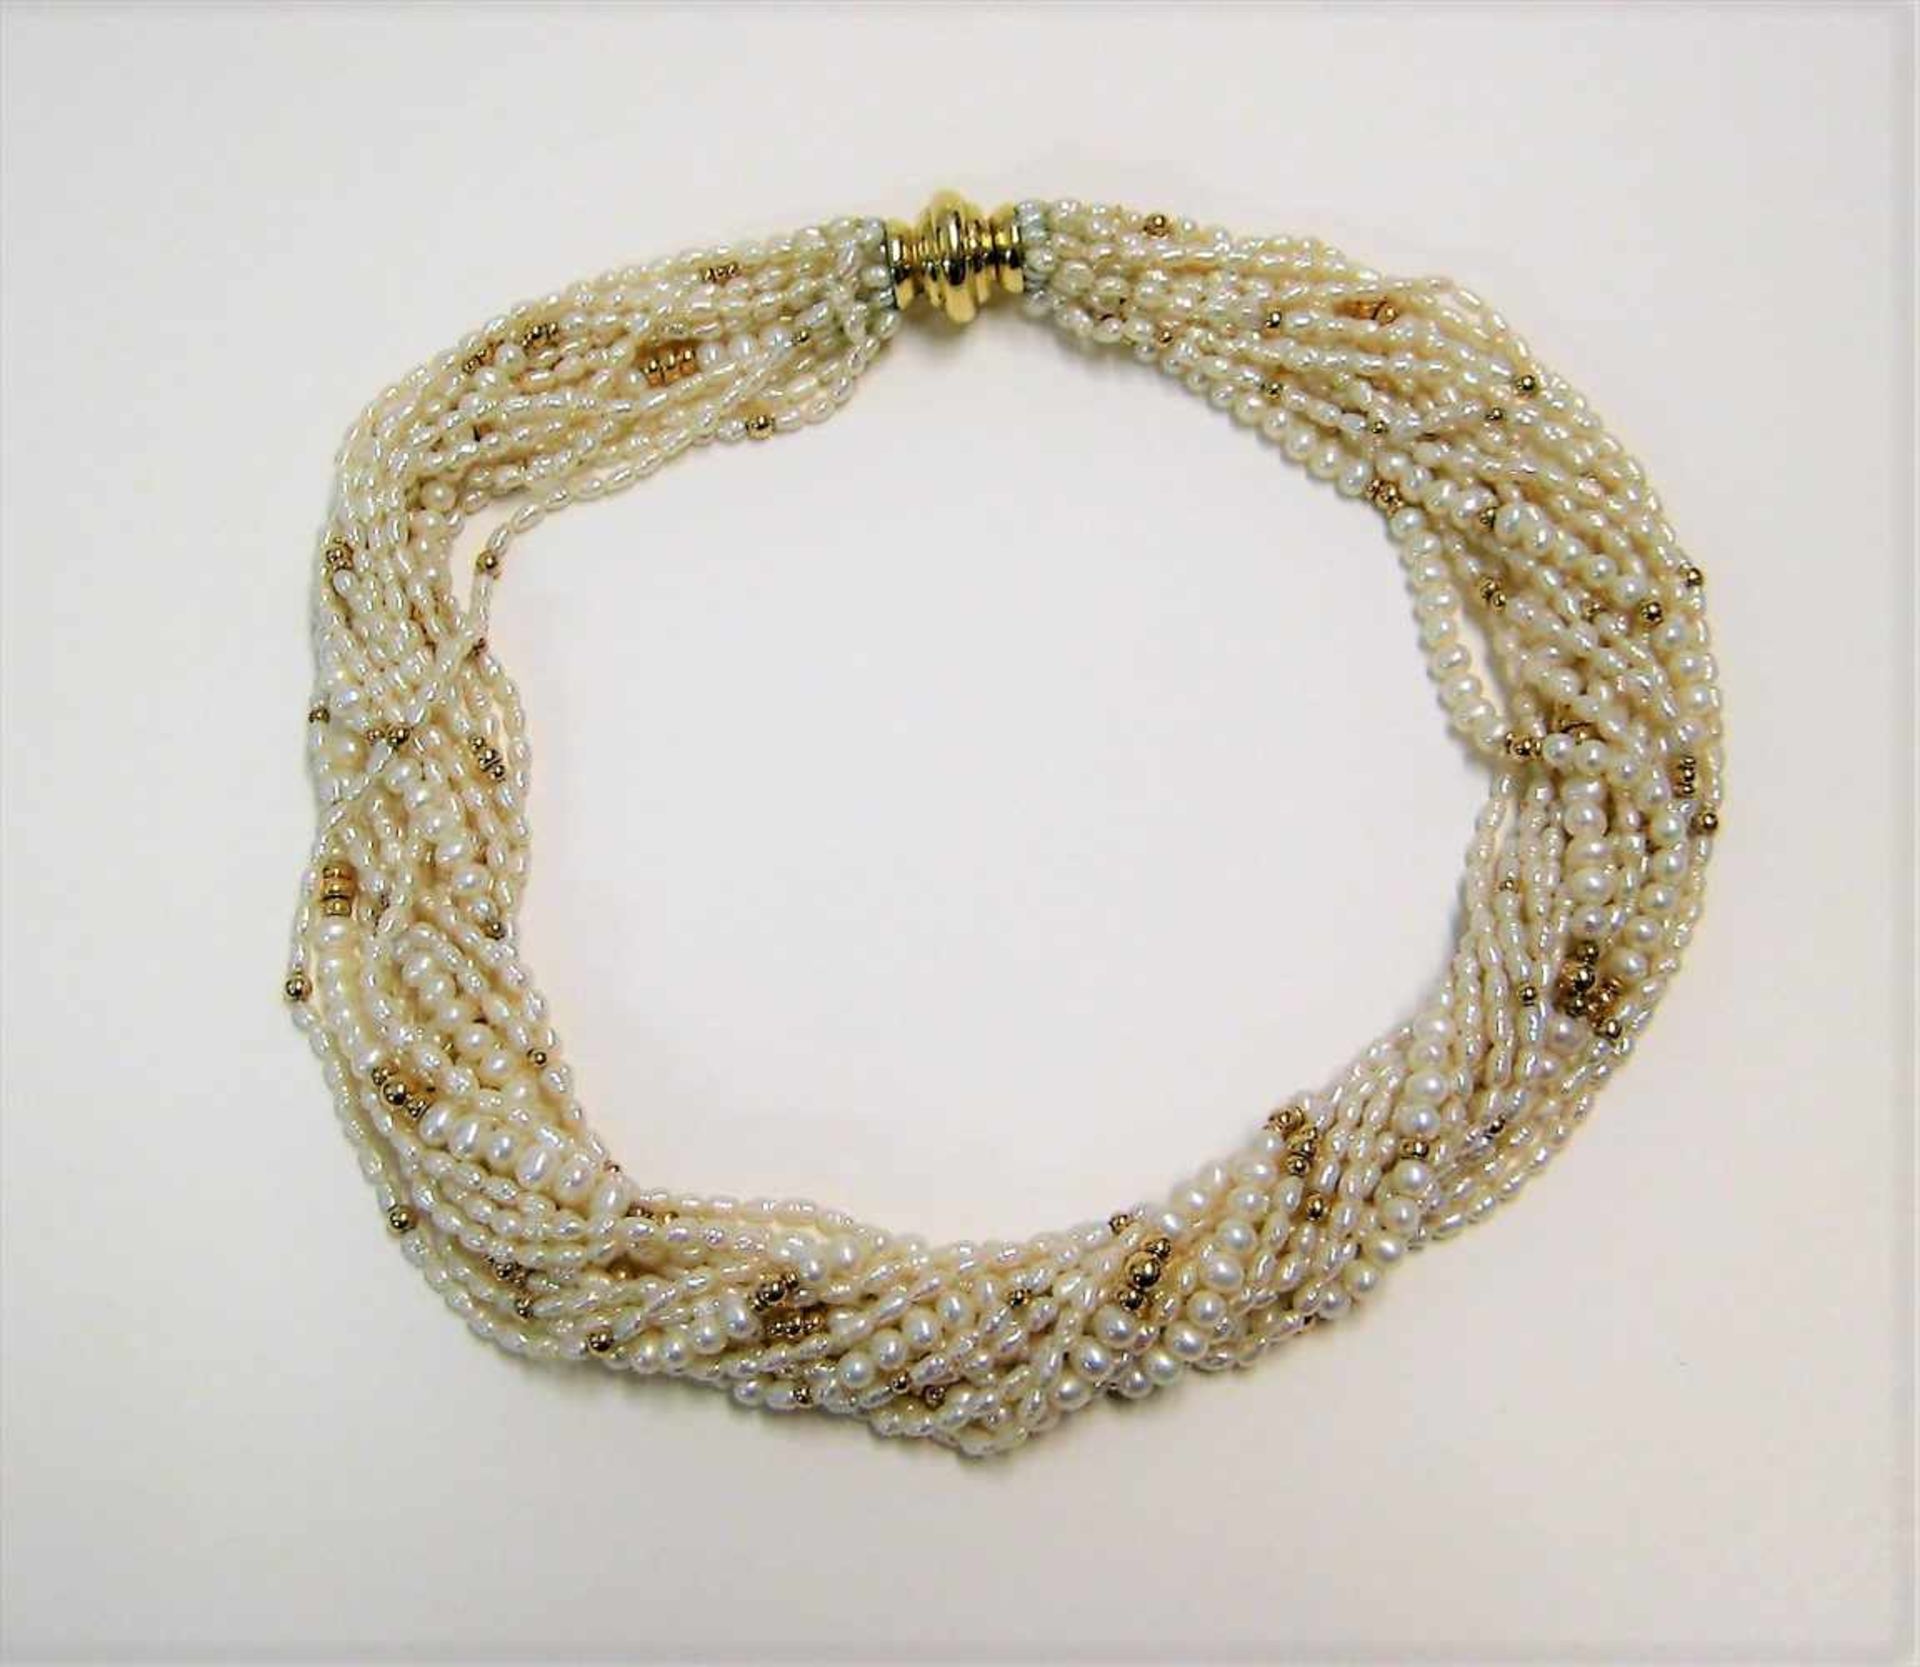 Vielreihige Perlenkette, 16 reihig, 585er Gelbgold-Schließe und -zwischenstücke, Juweliersigné "